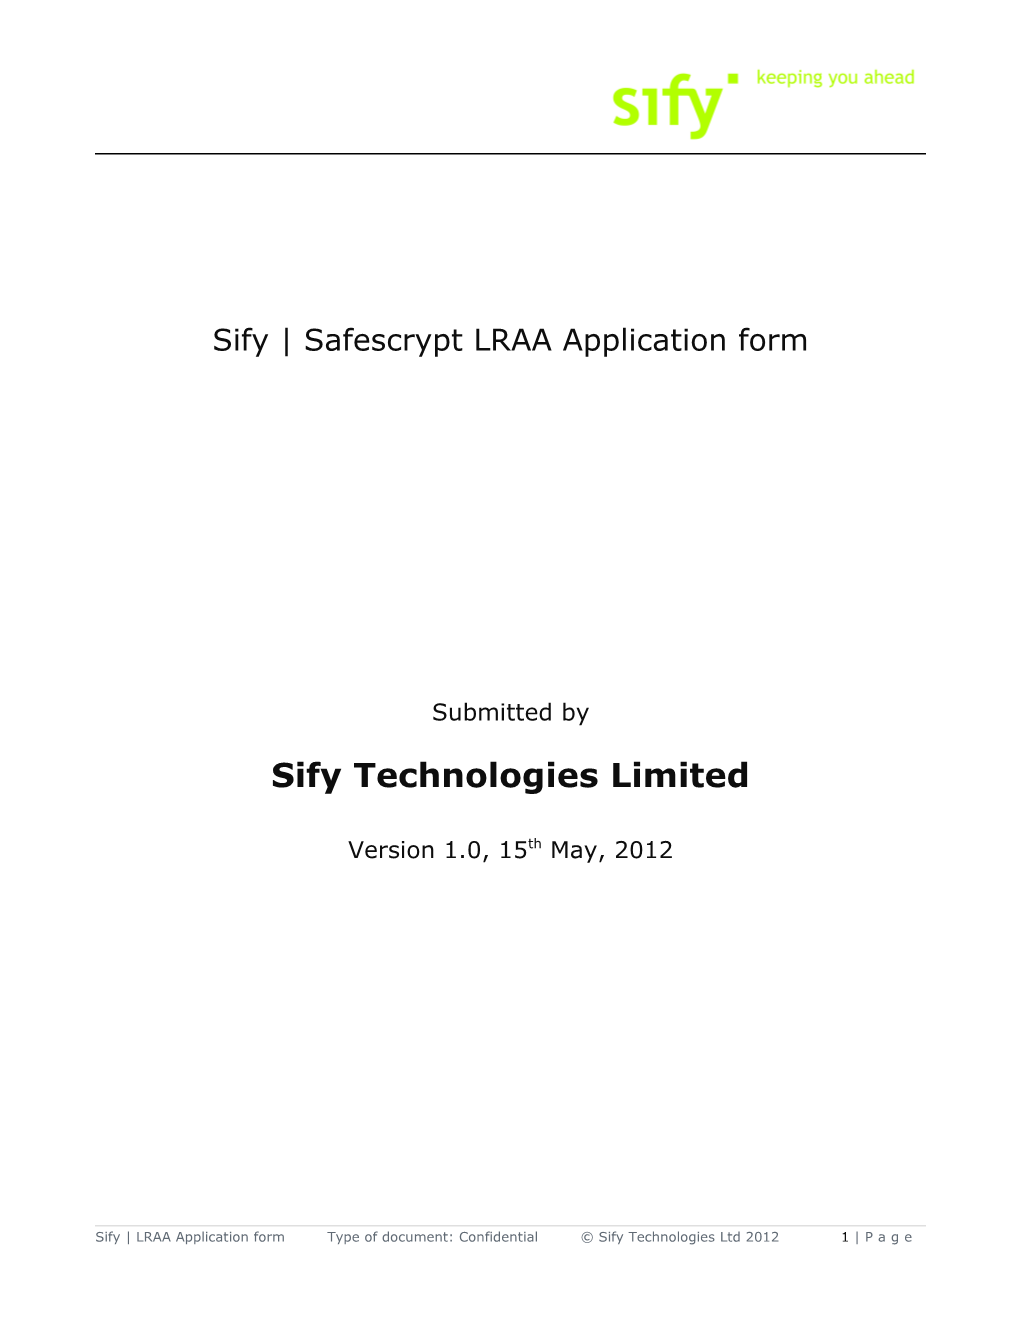 Sify Safescrypt LRAA Application Form